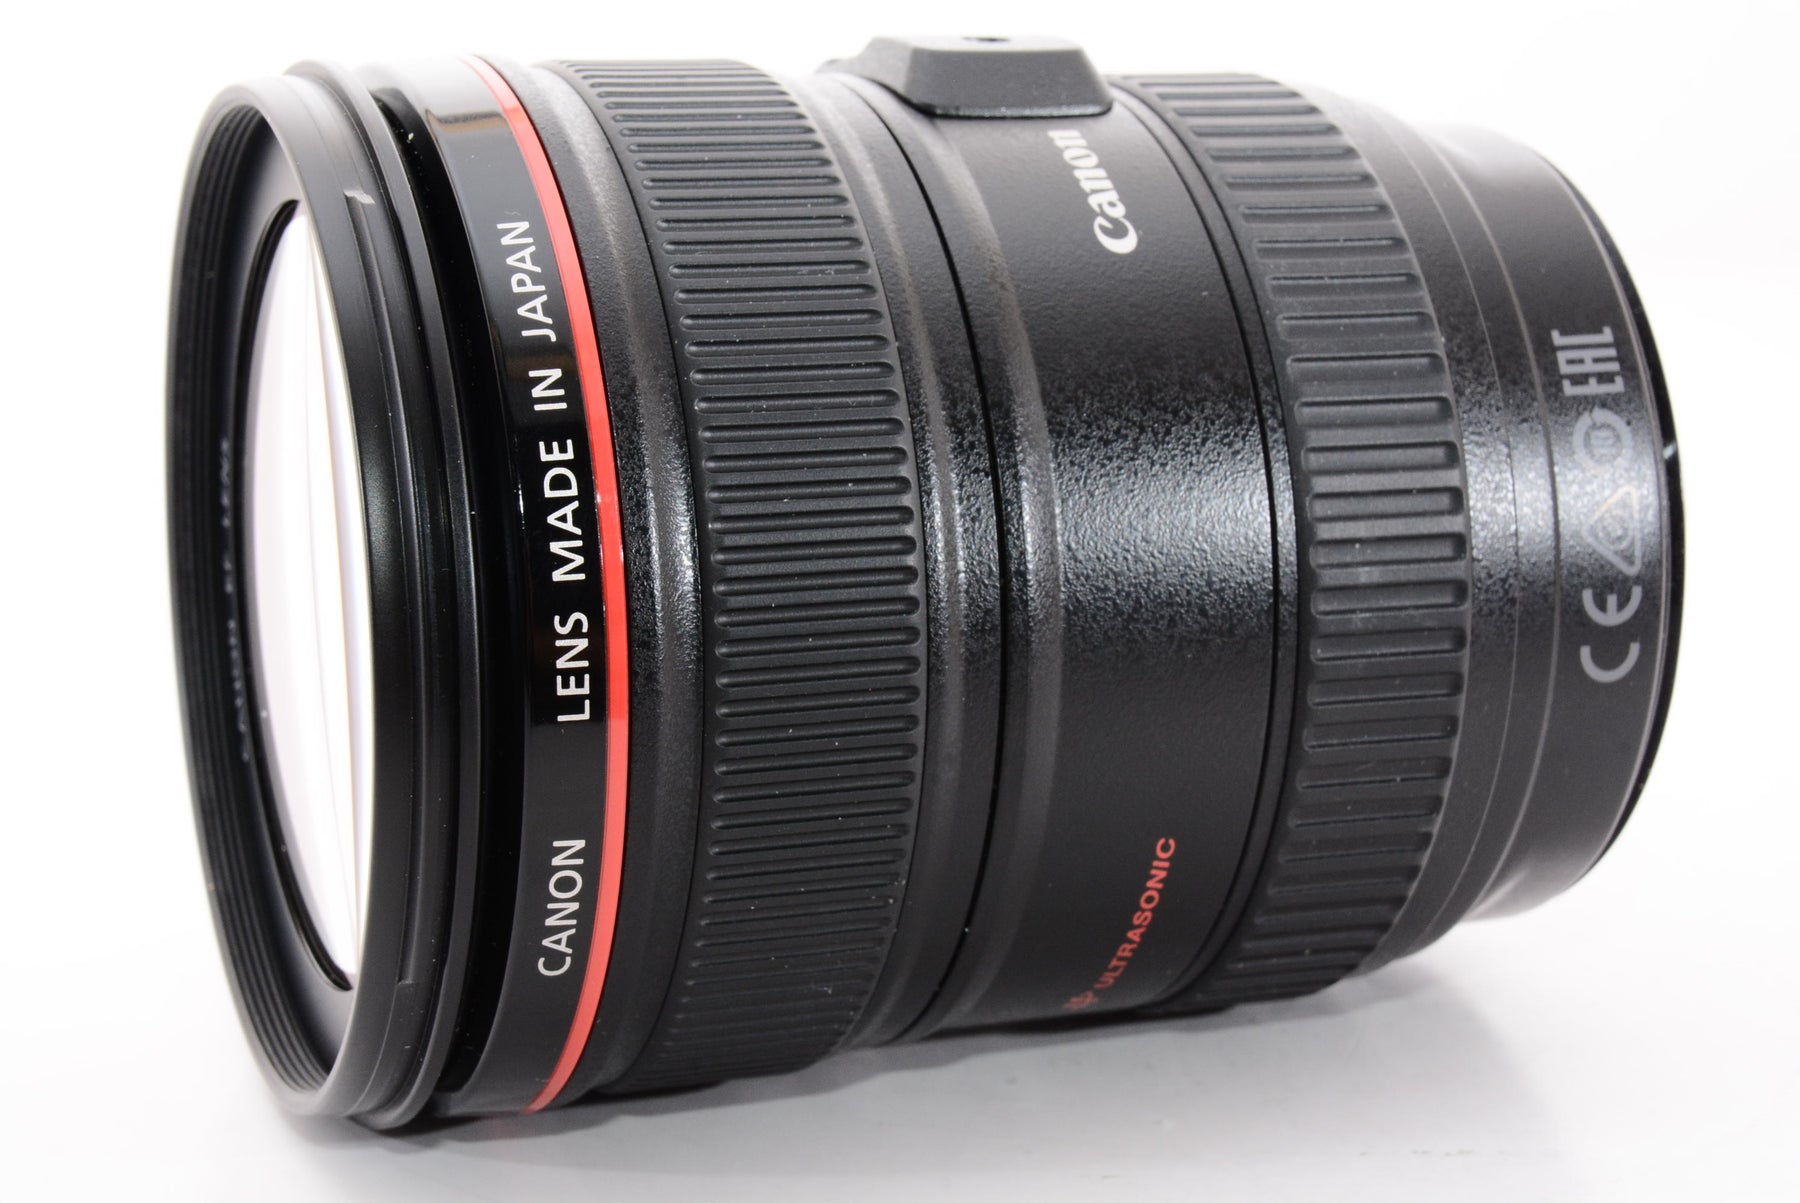 Canon 広角ズームレンズ EF17-40mm F4L USM フルサイズ対応